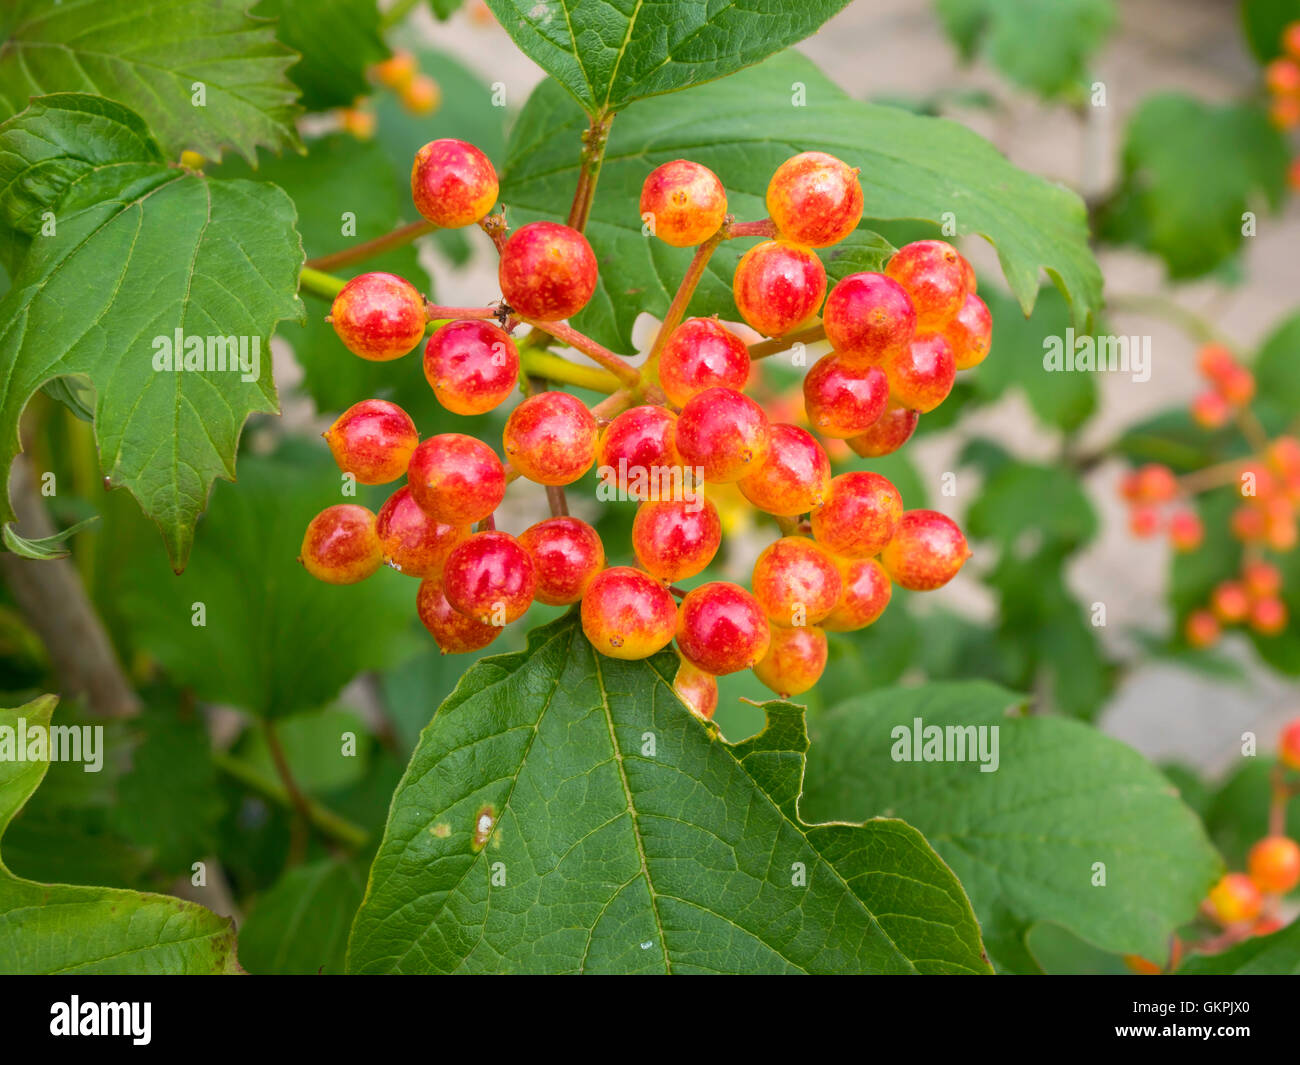 Fruit berries of the plant Viburnum Opulus Compactum or Compact Guelder Rose in autumn Stock Photo